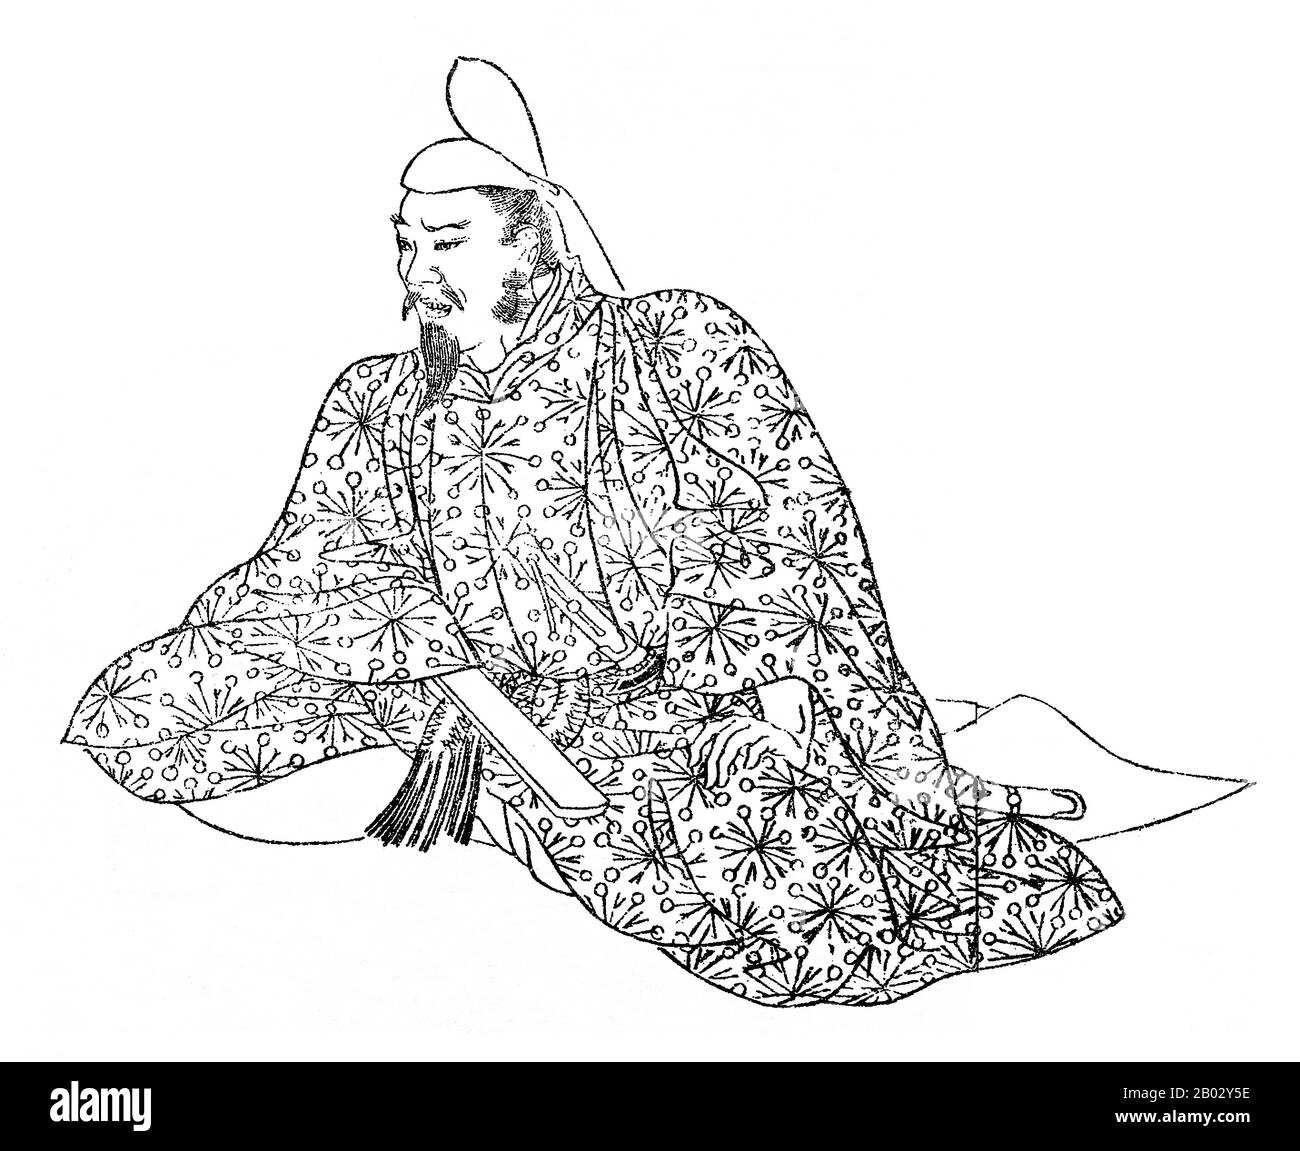 Nel 833, l'imperatore Ninmyo chiamò Tssunetsugu l'ambasciatore imperiale in Cina. È stato l'ultimo inviato dal Giappone alla Cina durante il periodo Heian. La missione diplomatica lasciò Kyushu nell'838; Tsunetsugu tornò in Giappone nell'839. Il partito di missione comprendeva il monaco buddista Ennin così come Ono no Takamura. Foto Stock